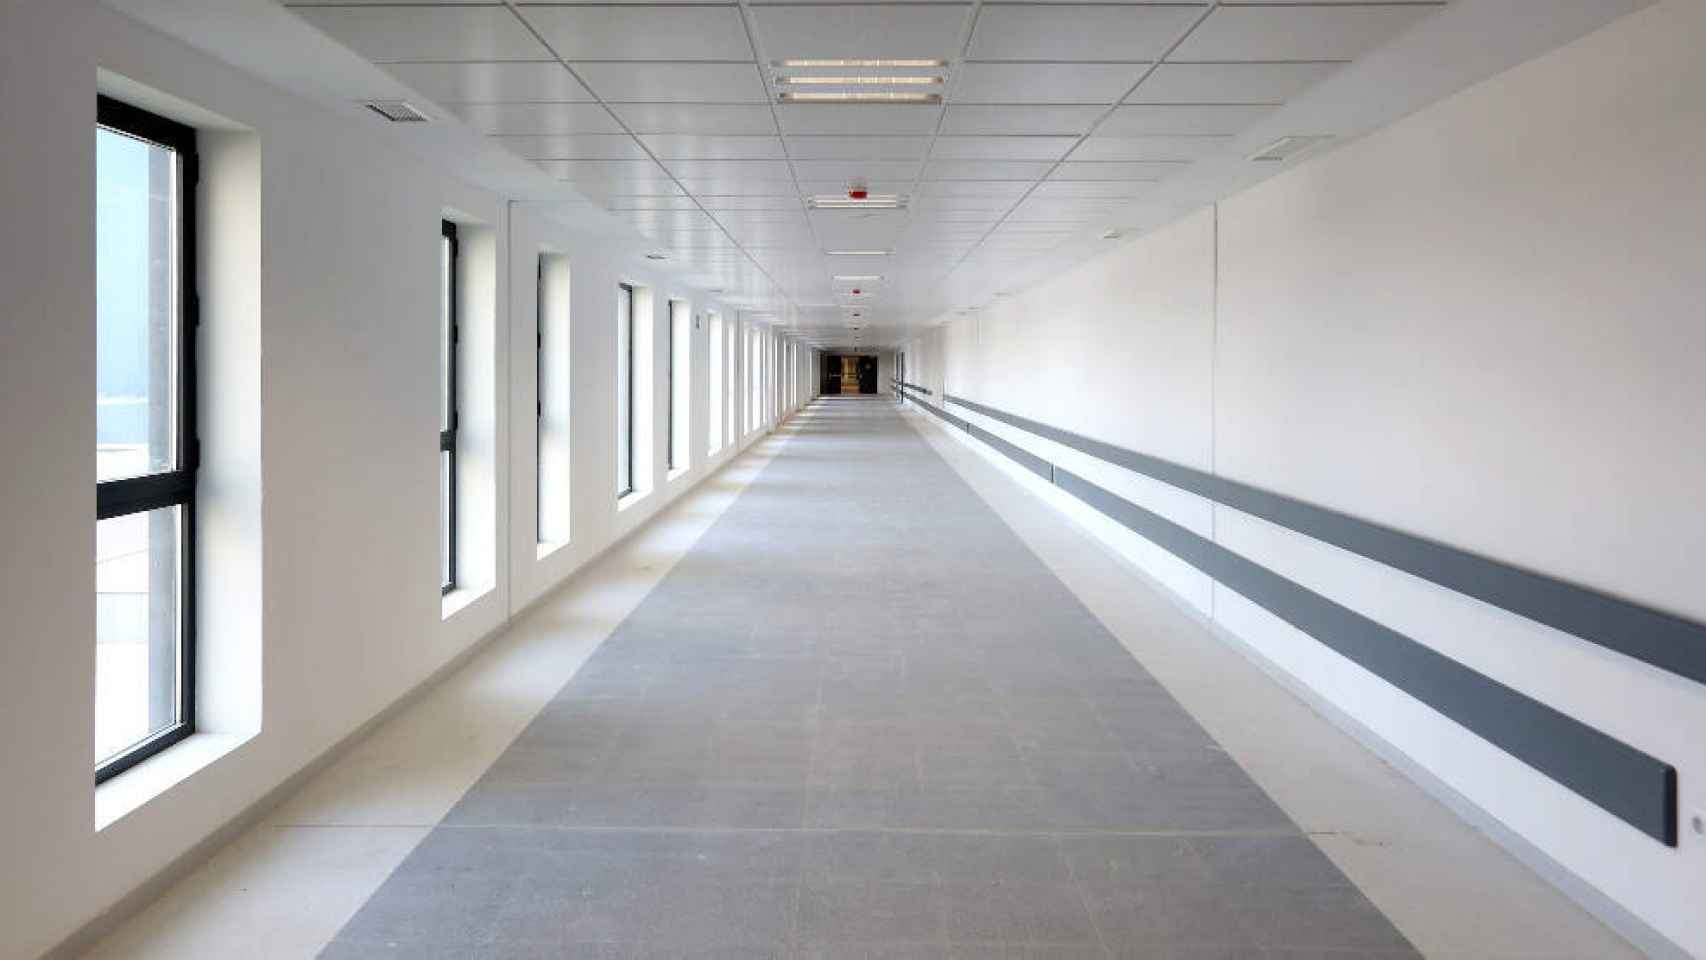 Uno de los pasillos del nuevo hospital de Toledo, todavía cerrado